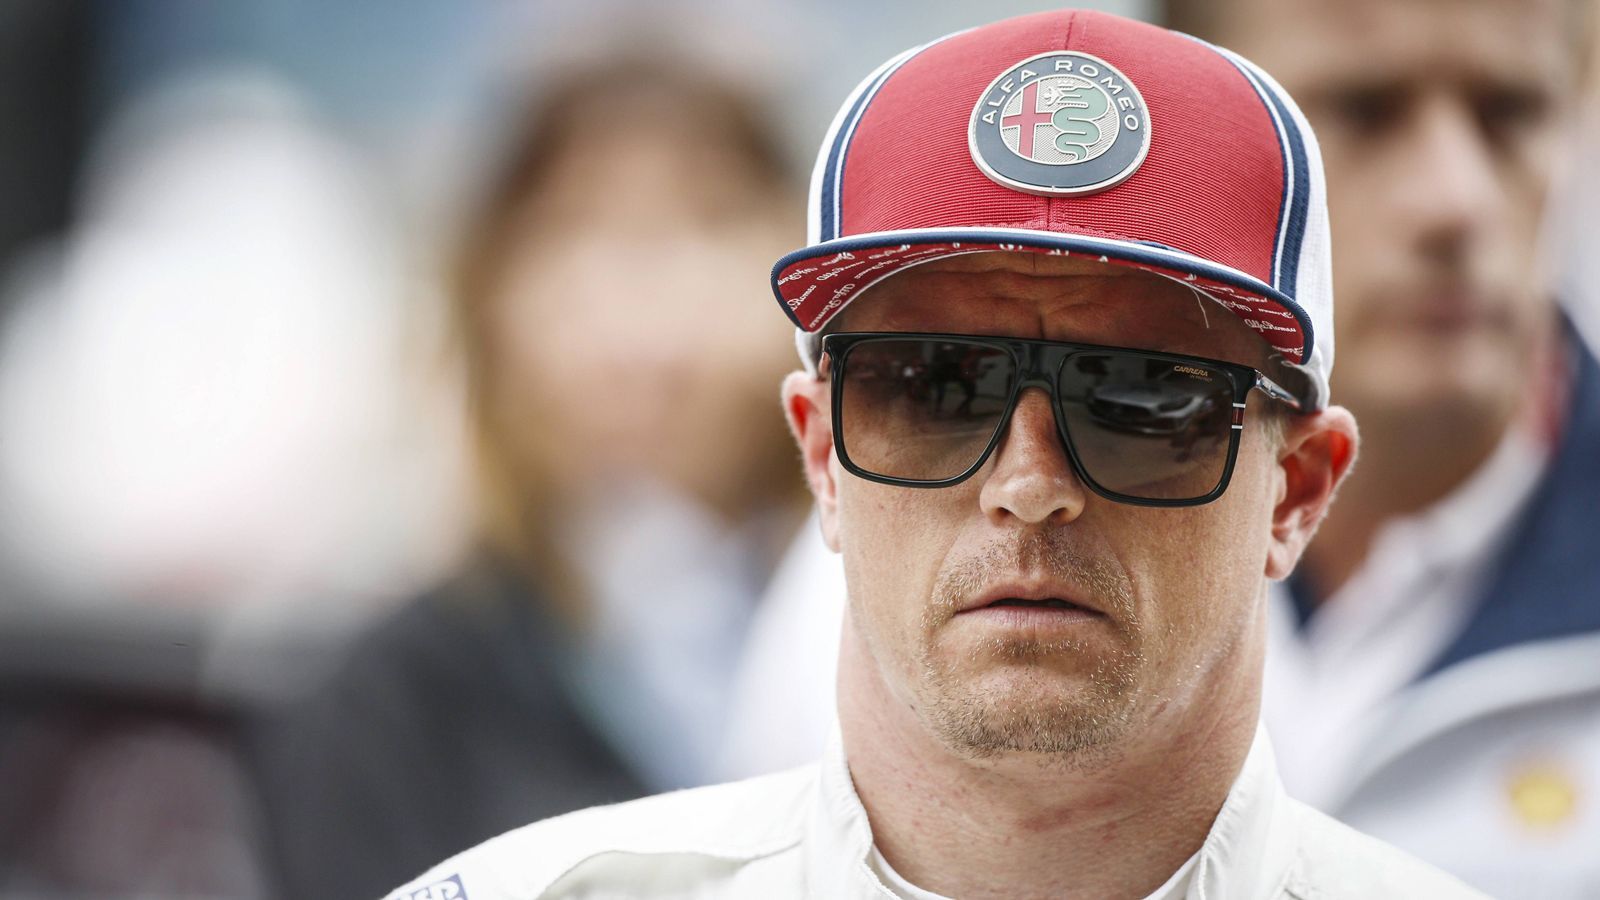 
                <strong>15. Kimi Räikkönen</strong><br>
                Punkte insgesamt: 10Aktuelle Punkte: 0Punkte 2014: 0Punkte 2015: 3Punkte 2016: 2Punkte 2017: 3Punkte 2018: 2Punkte 2019: 0
              